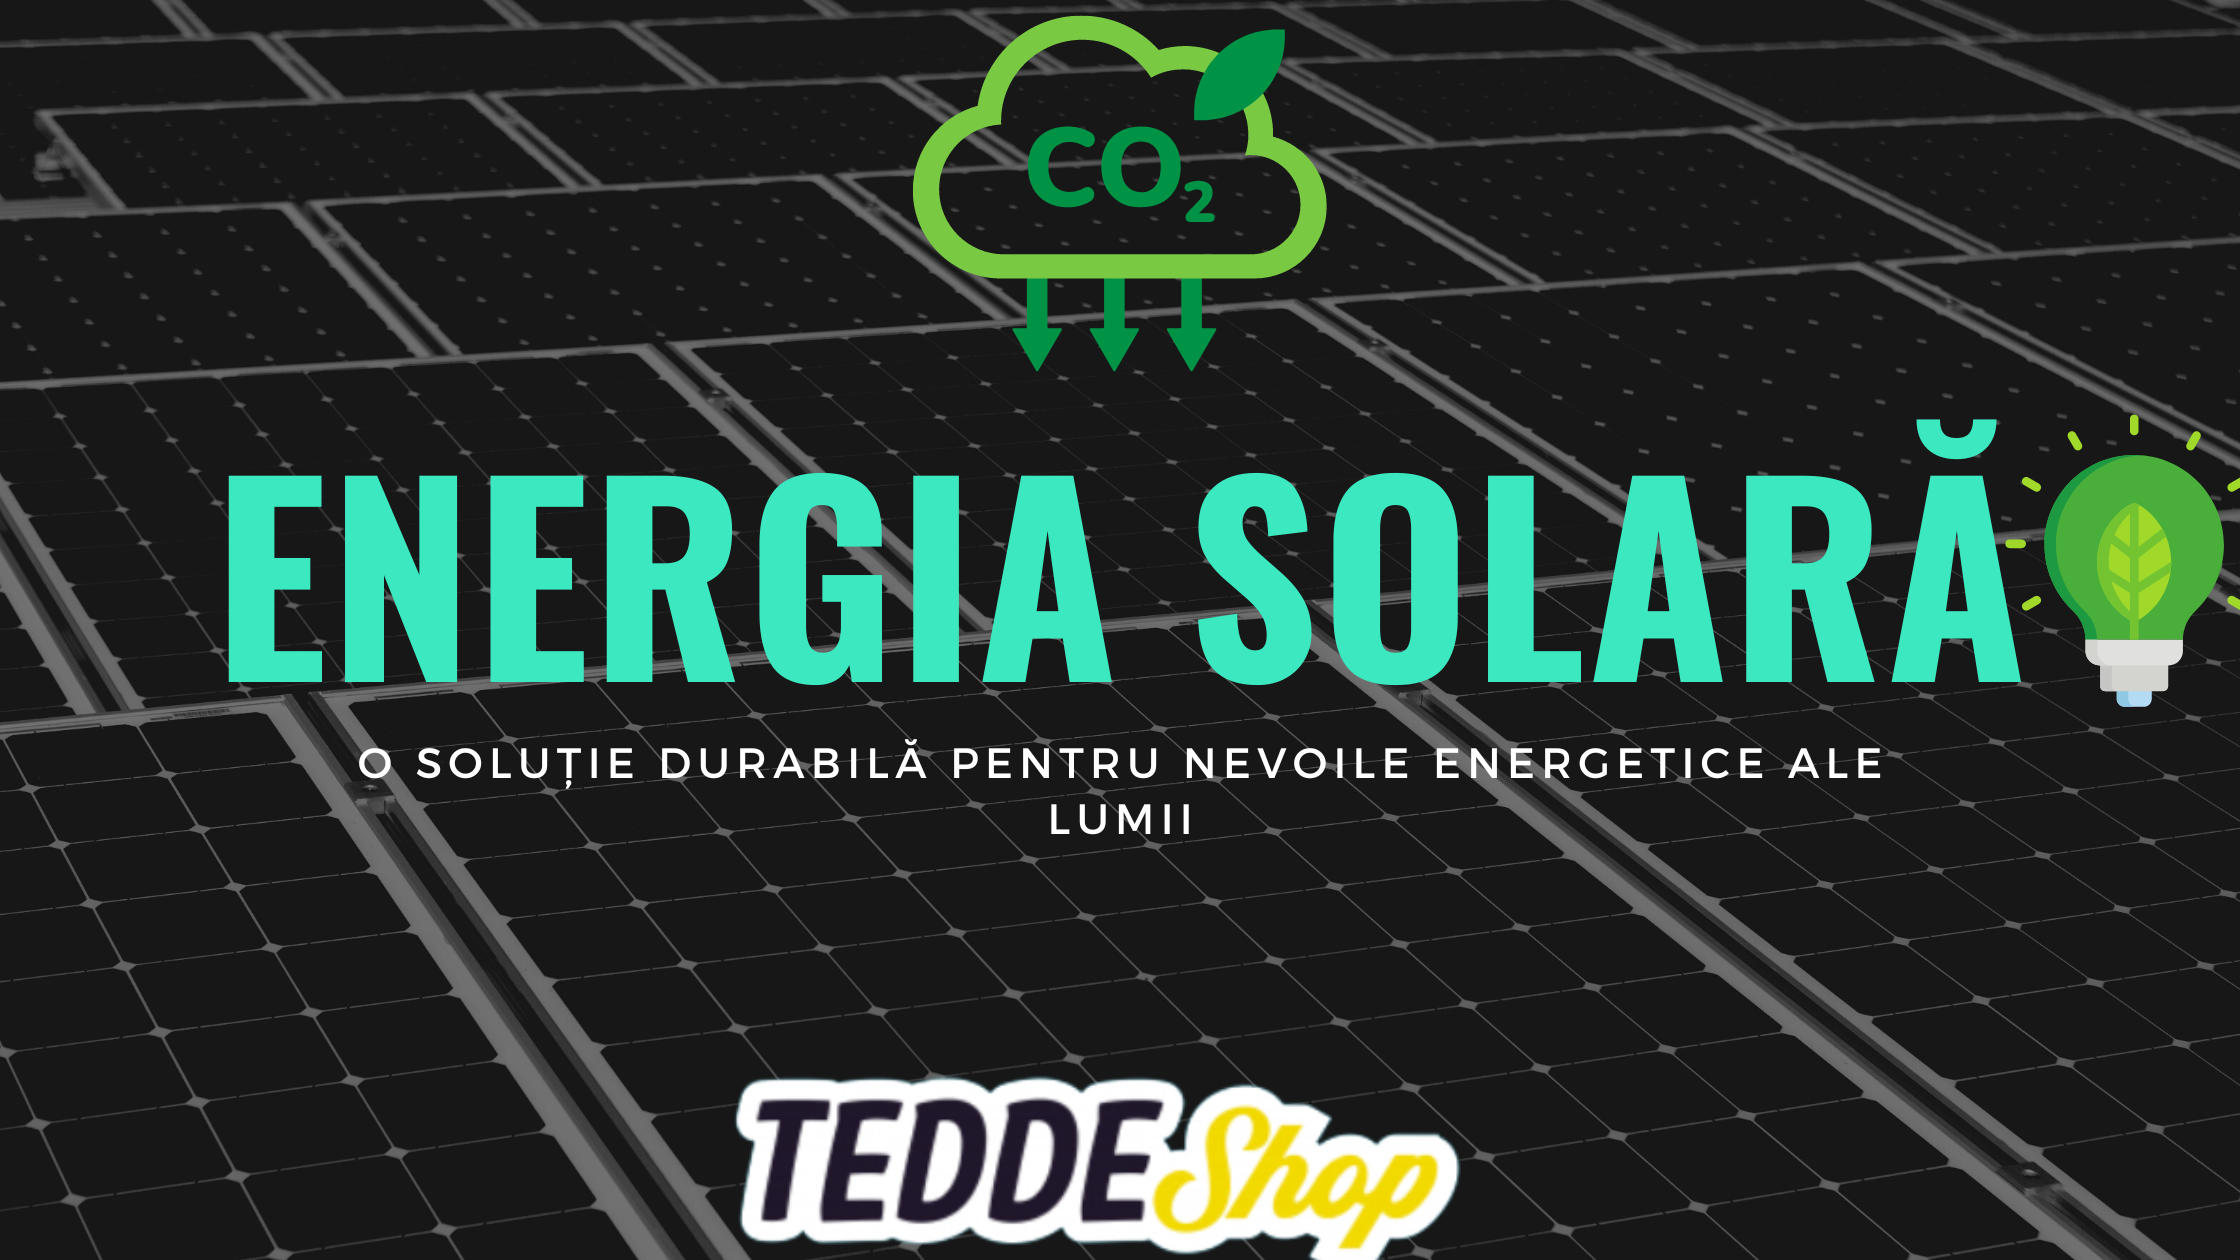 Energia solară - o soluție durabilă pentru nevoile energetice ale lumii